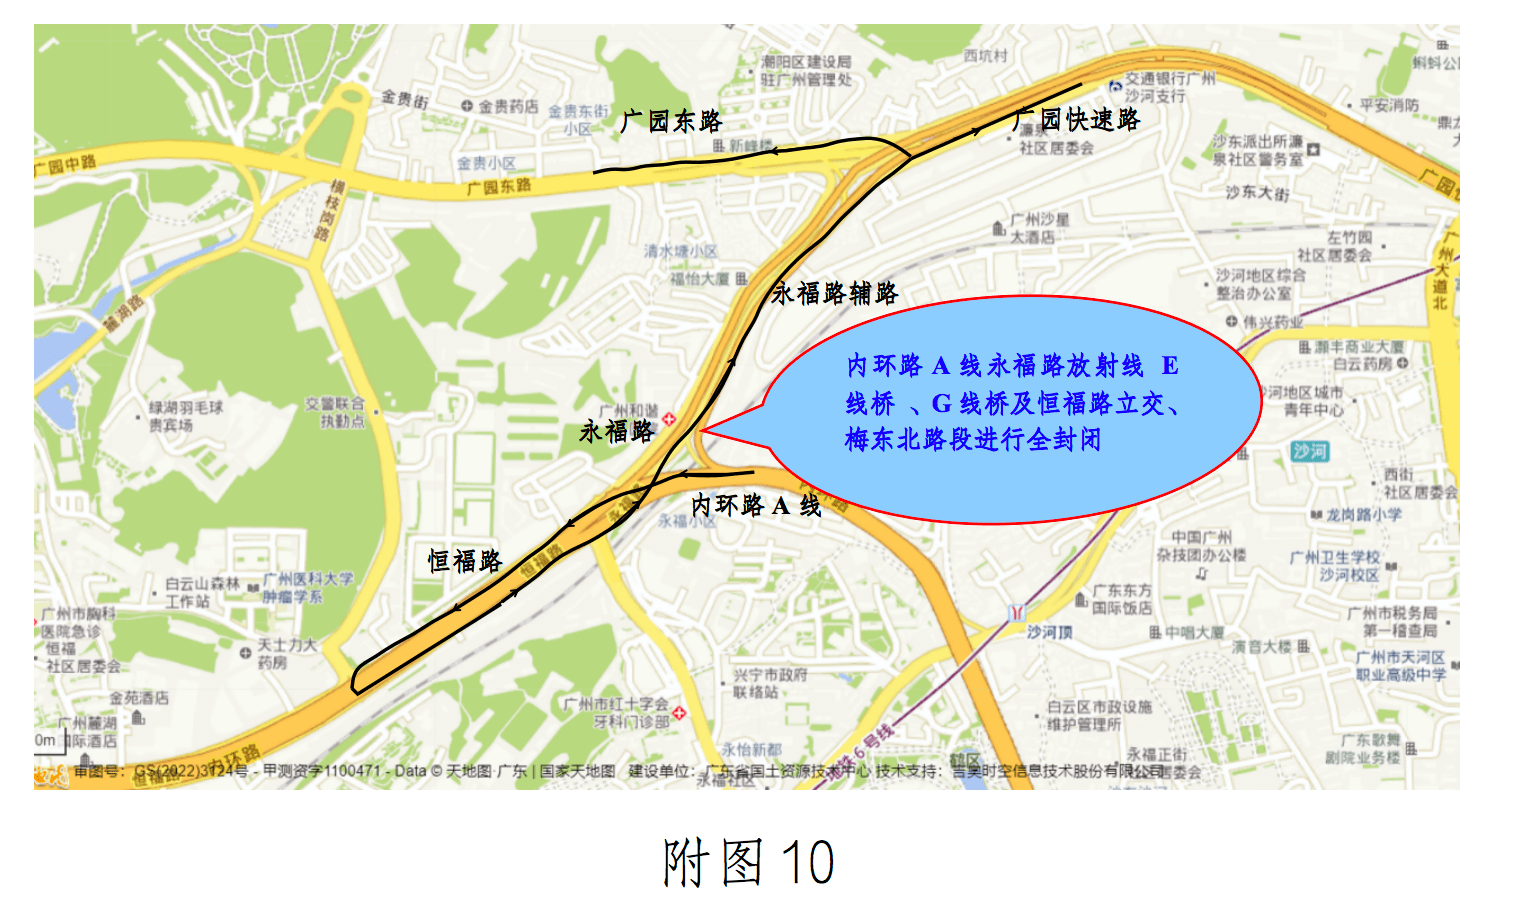 广州内环路及放射线高架部分桥跨10月24日起进行桥梁检测